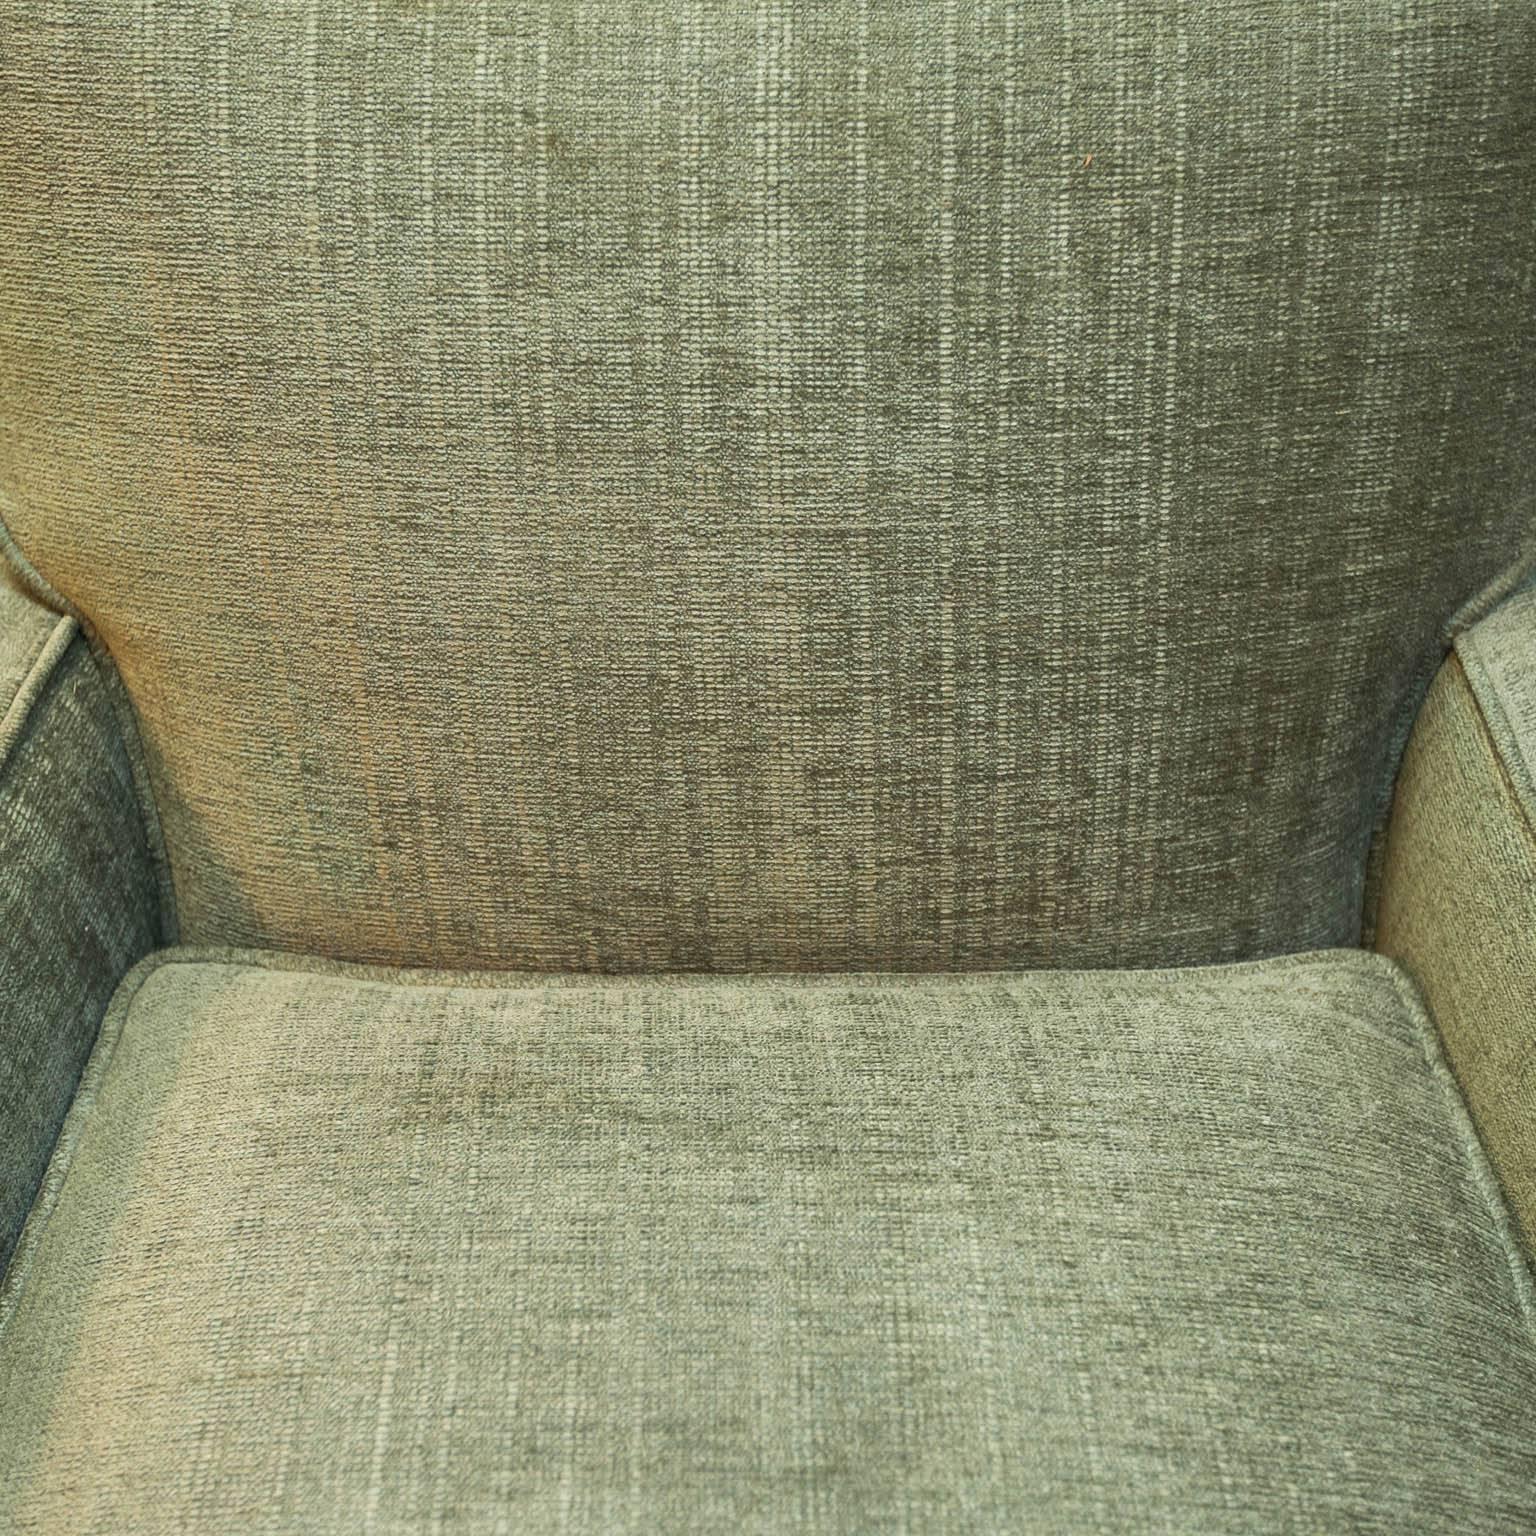 American Mid-Century Modern Lounge Chair in Green Velvet